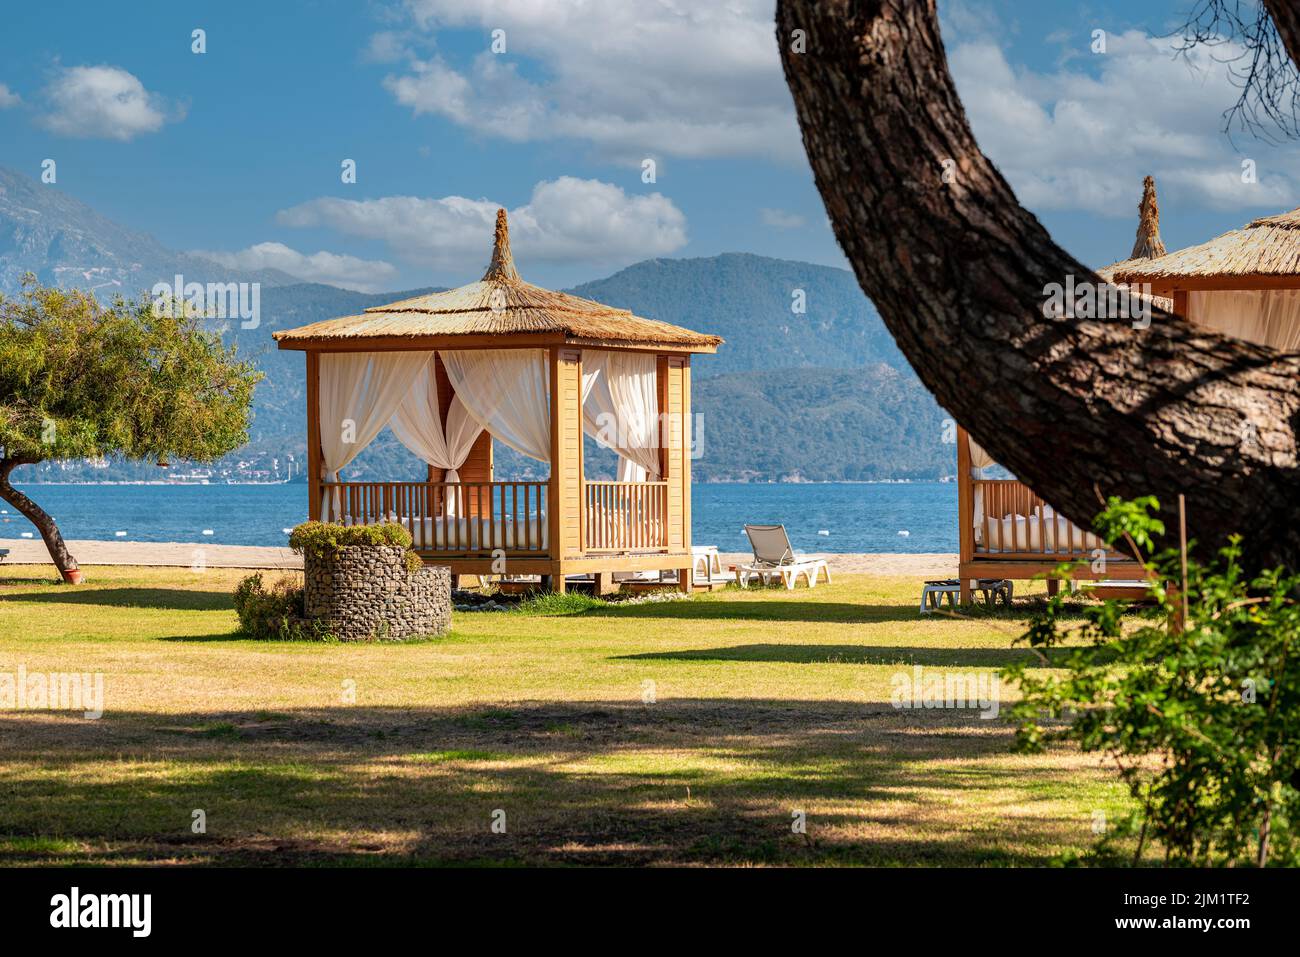 Cabaña lujosa y confortable entre los árboles de la playa del hotel Foto de stock